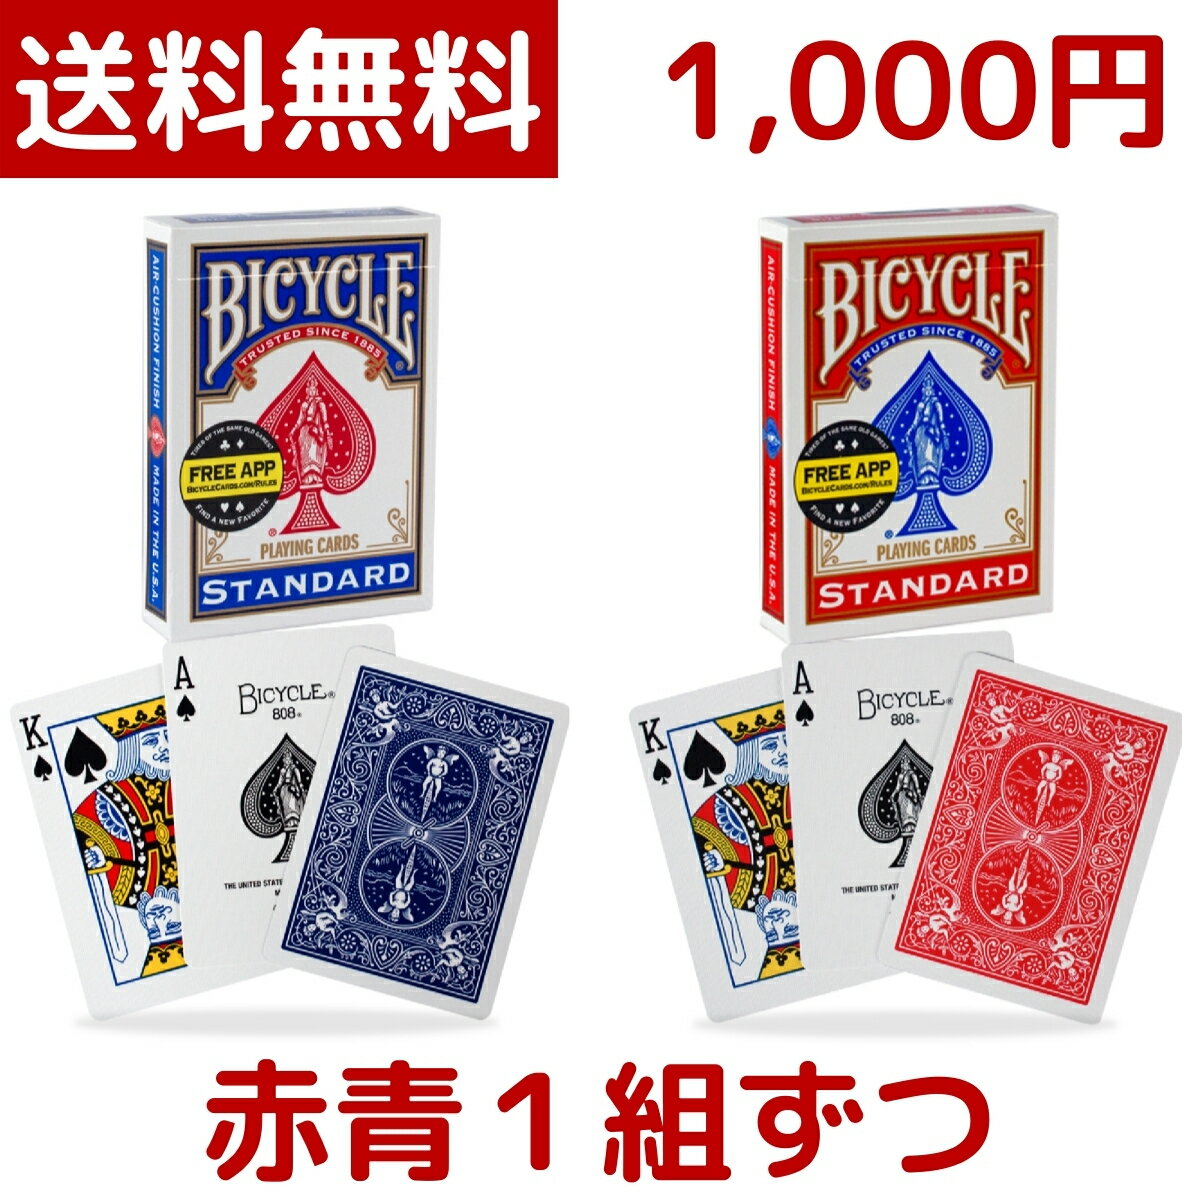 【1000円ポッキリ】【2パック入り】 BICYCLE ...